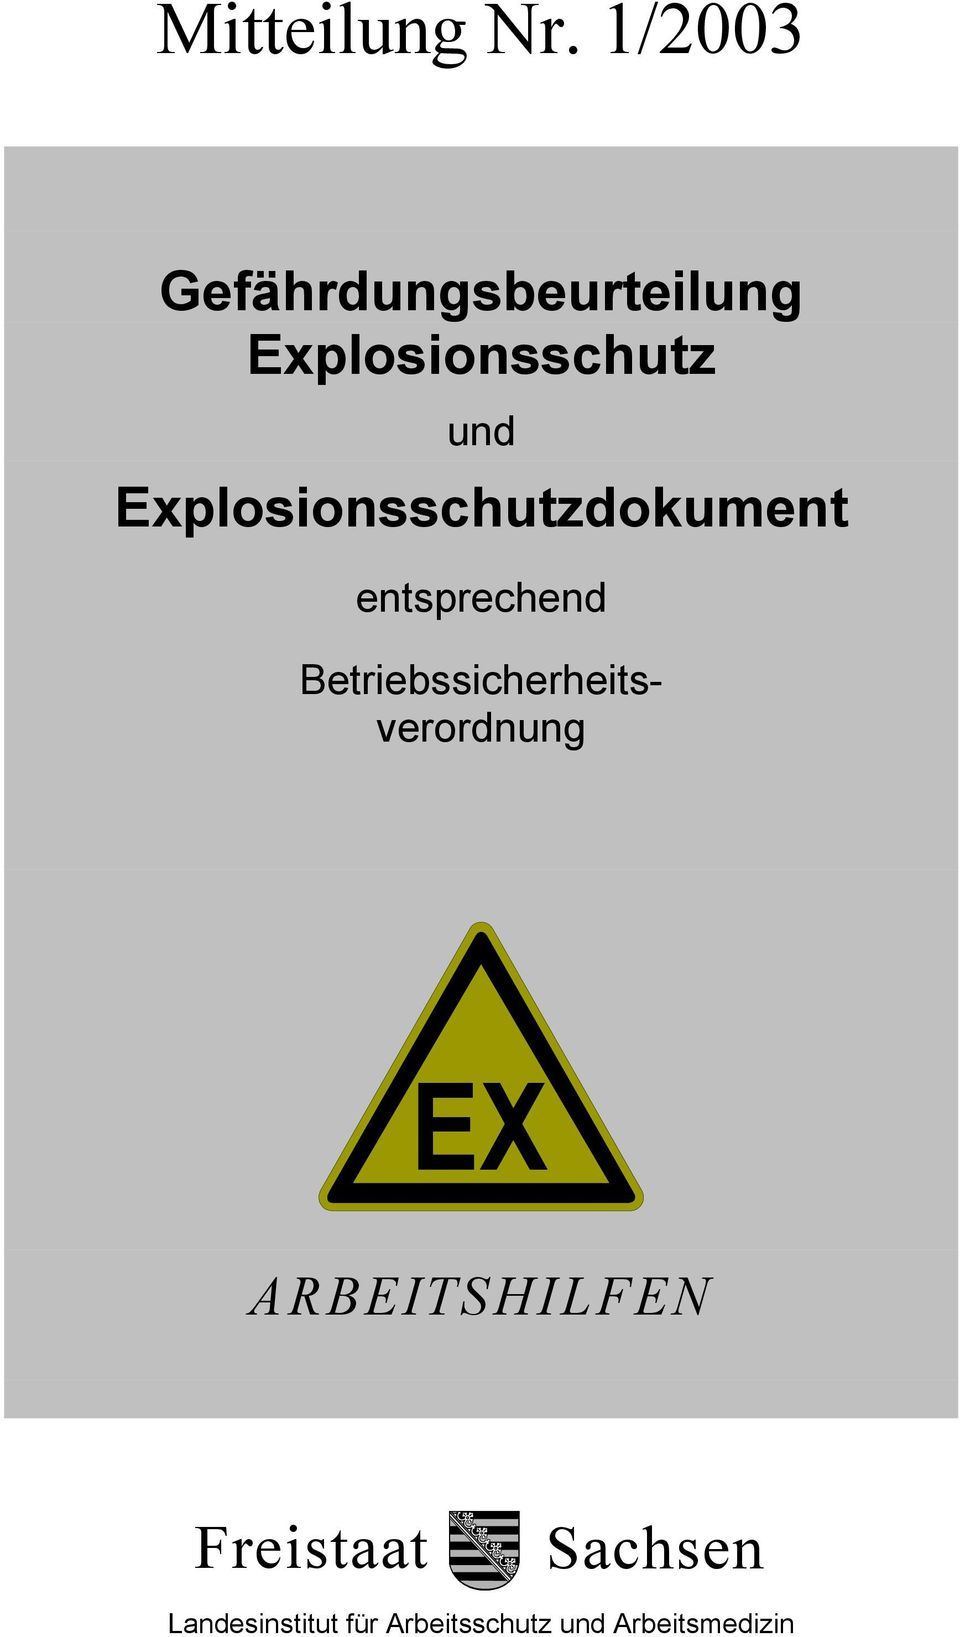 Explosionsschutzdokument entsprechend